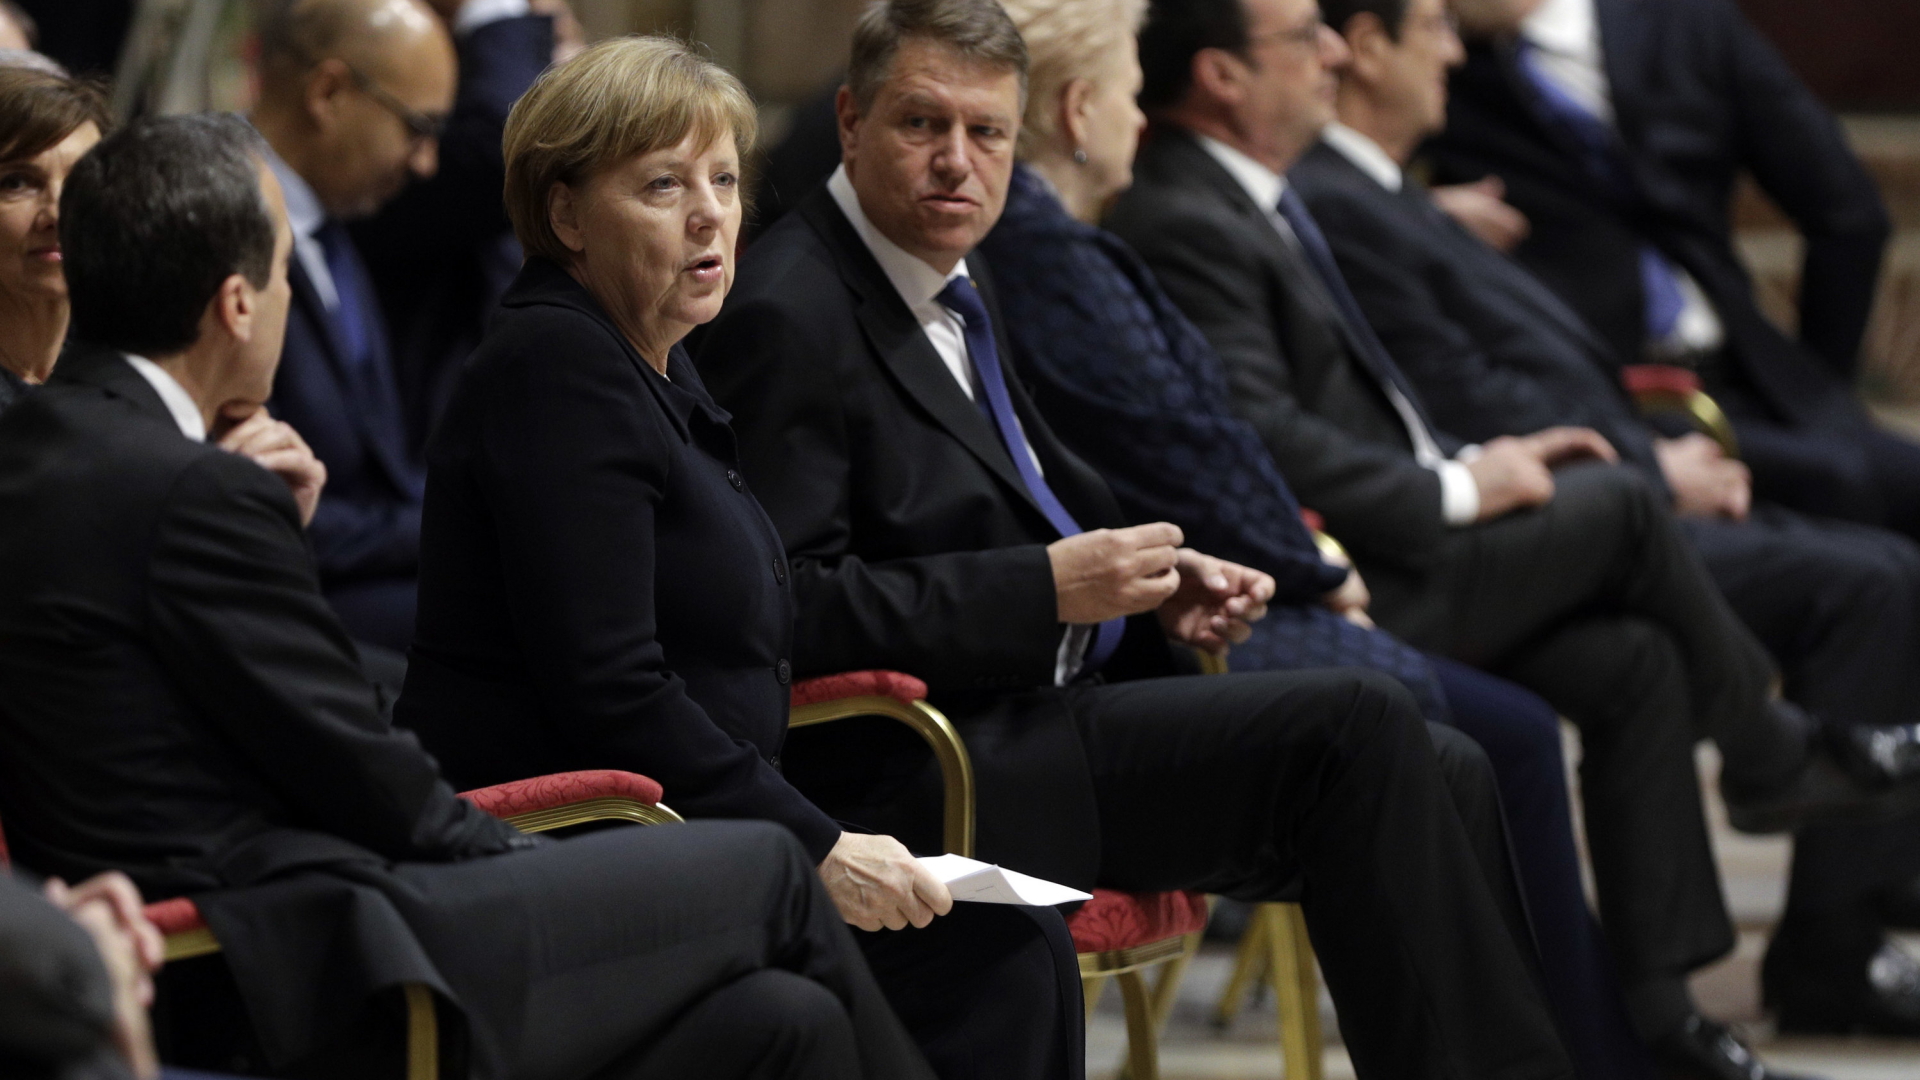 Bundeskanzlerin Angela Merkel, der rumänische Präsident Klaus Iohannis (rechts neben ihr) und weitere Politiker bei der Papstaudienz  | AP